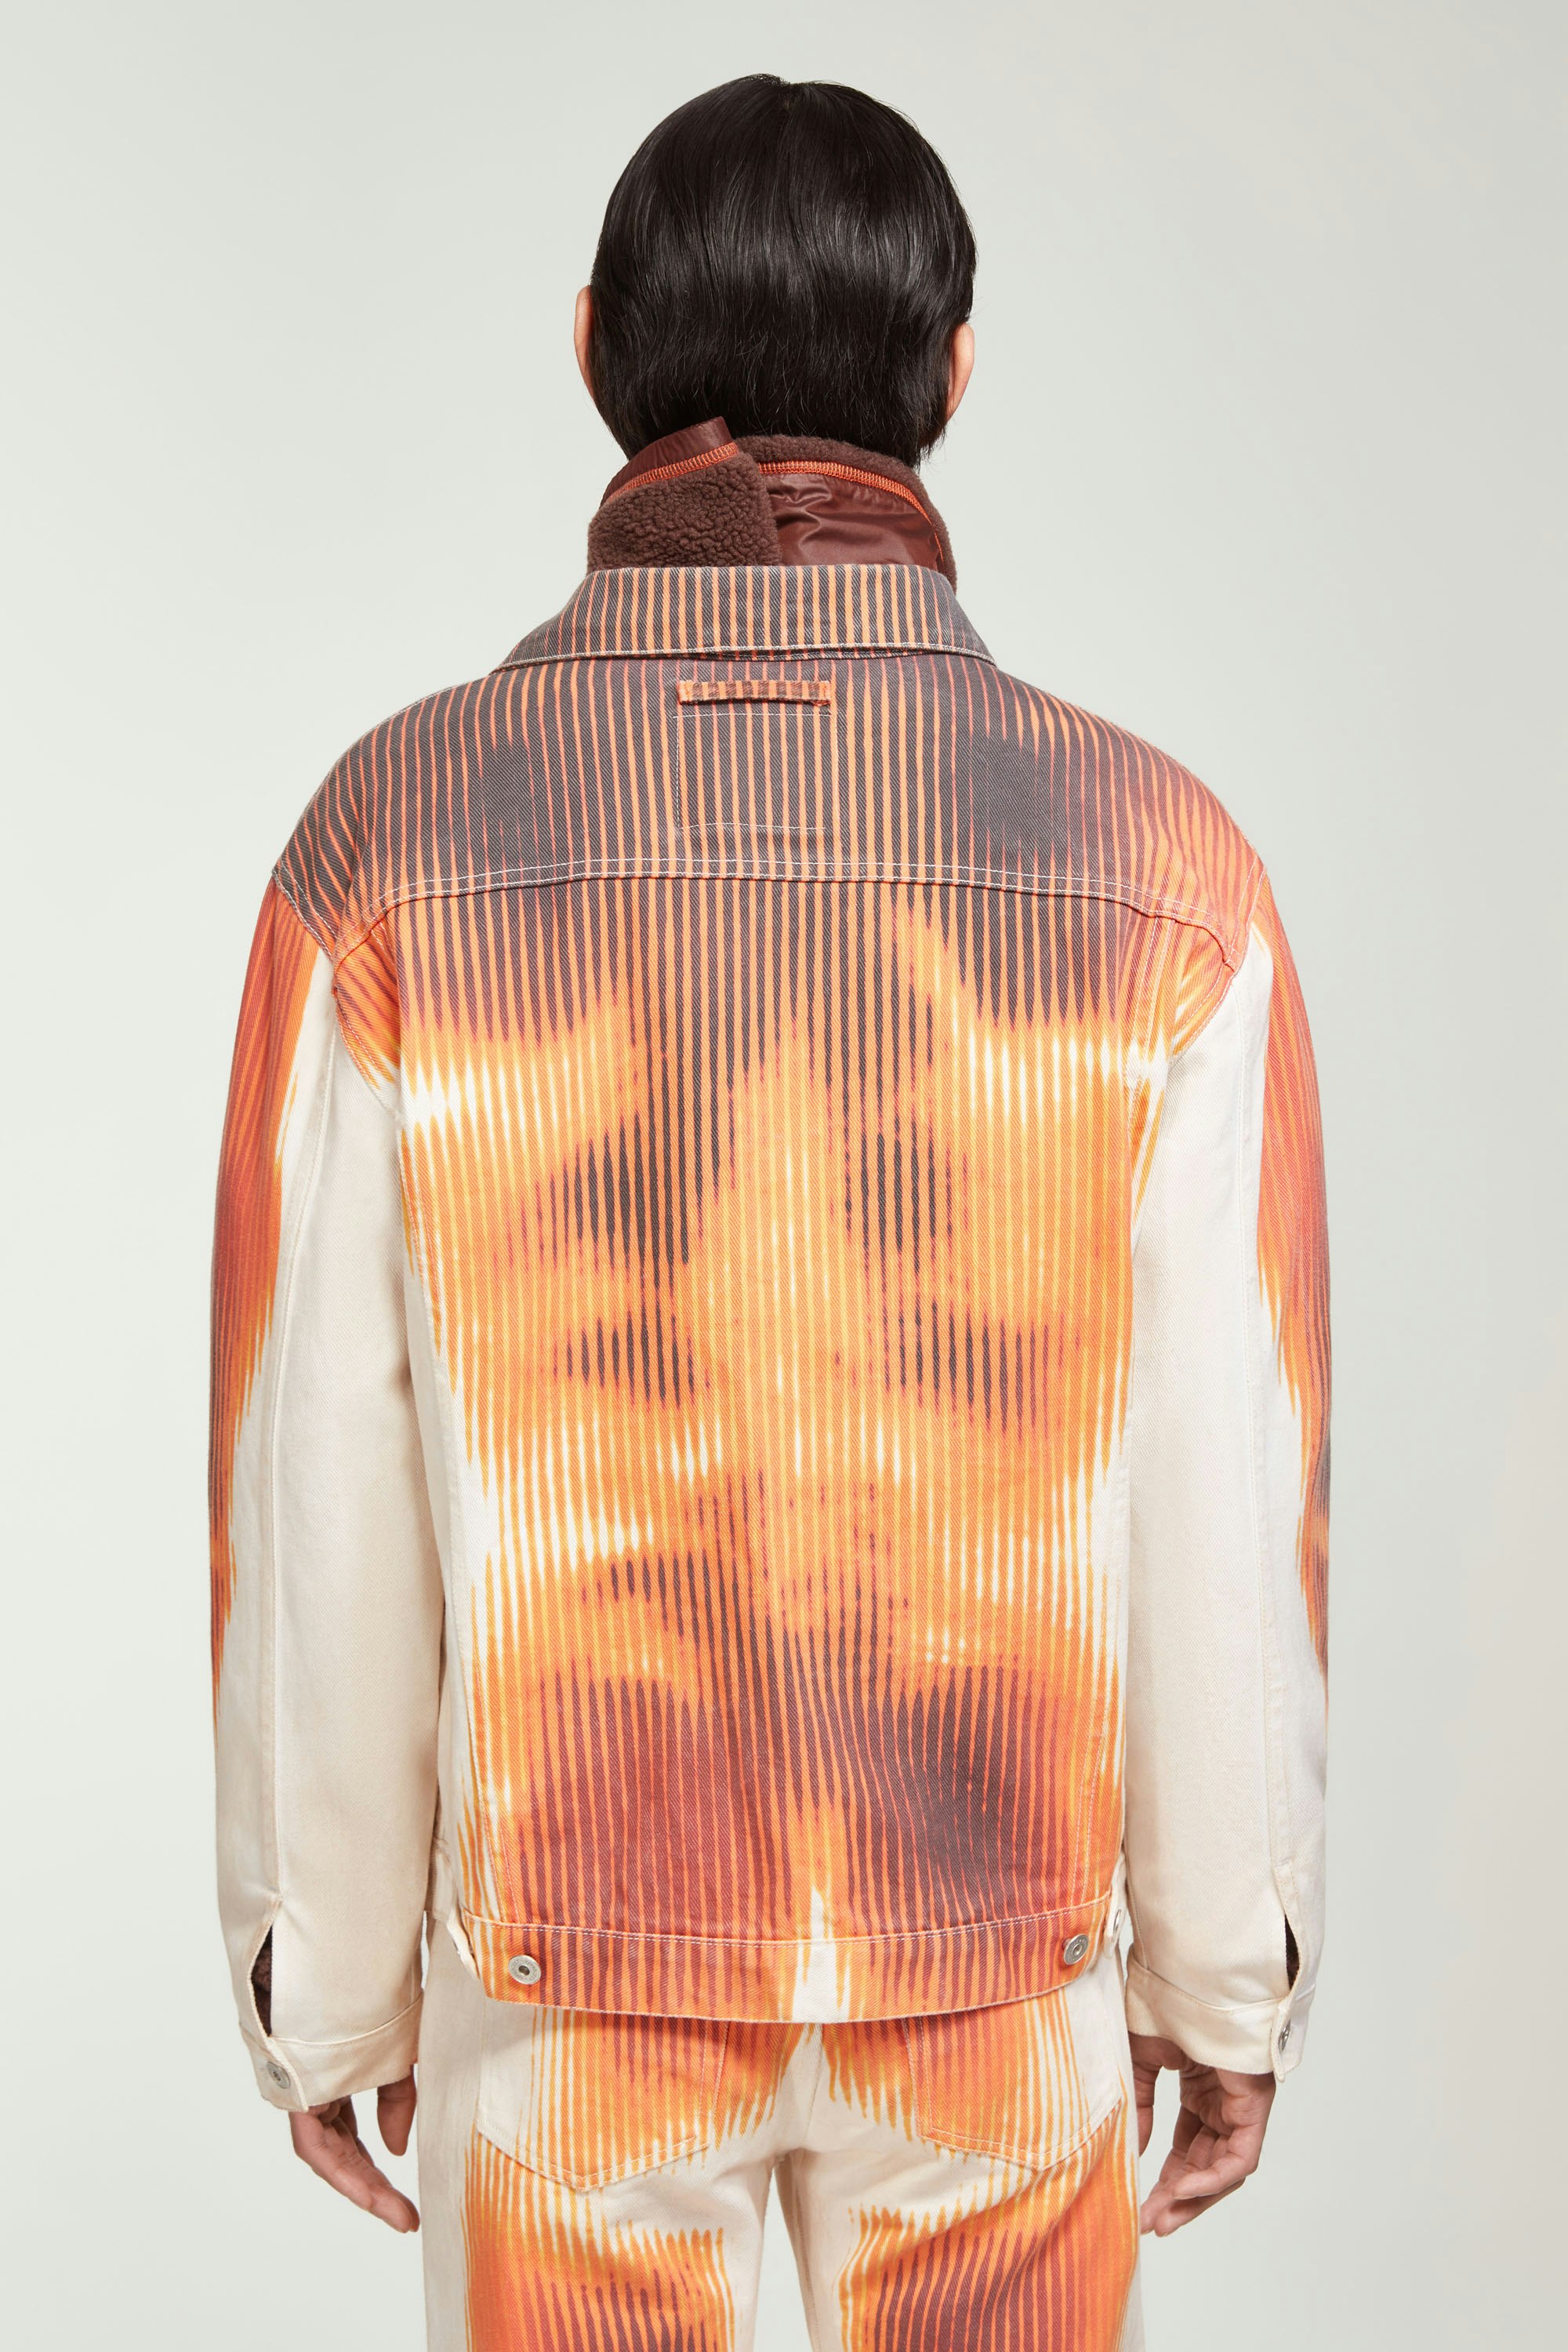 The White & Orange Body Morph Denim Jacket by Jean Paul Gaultier x Y/Project